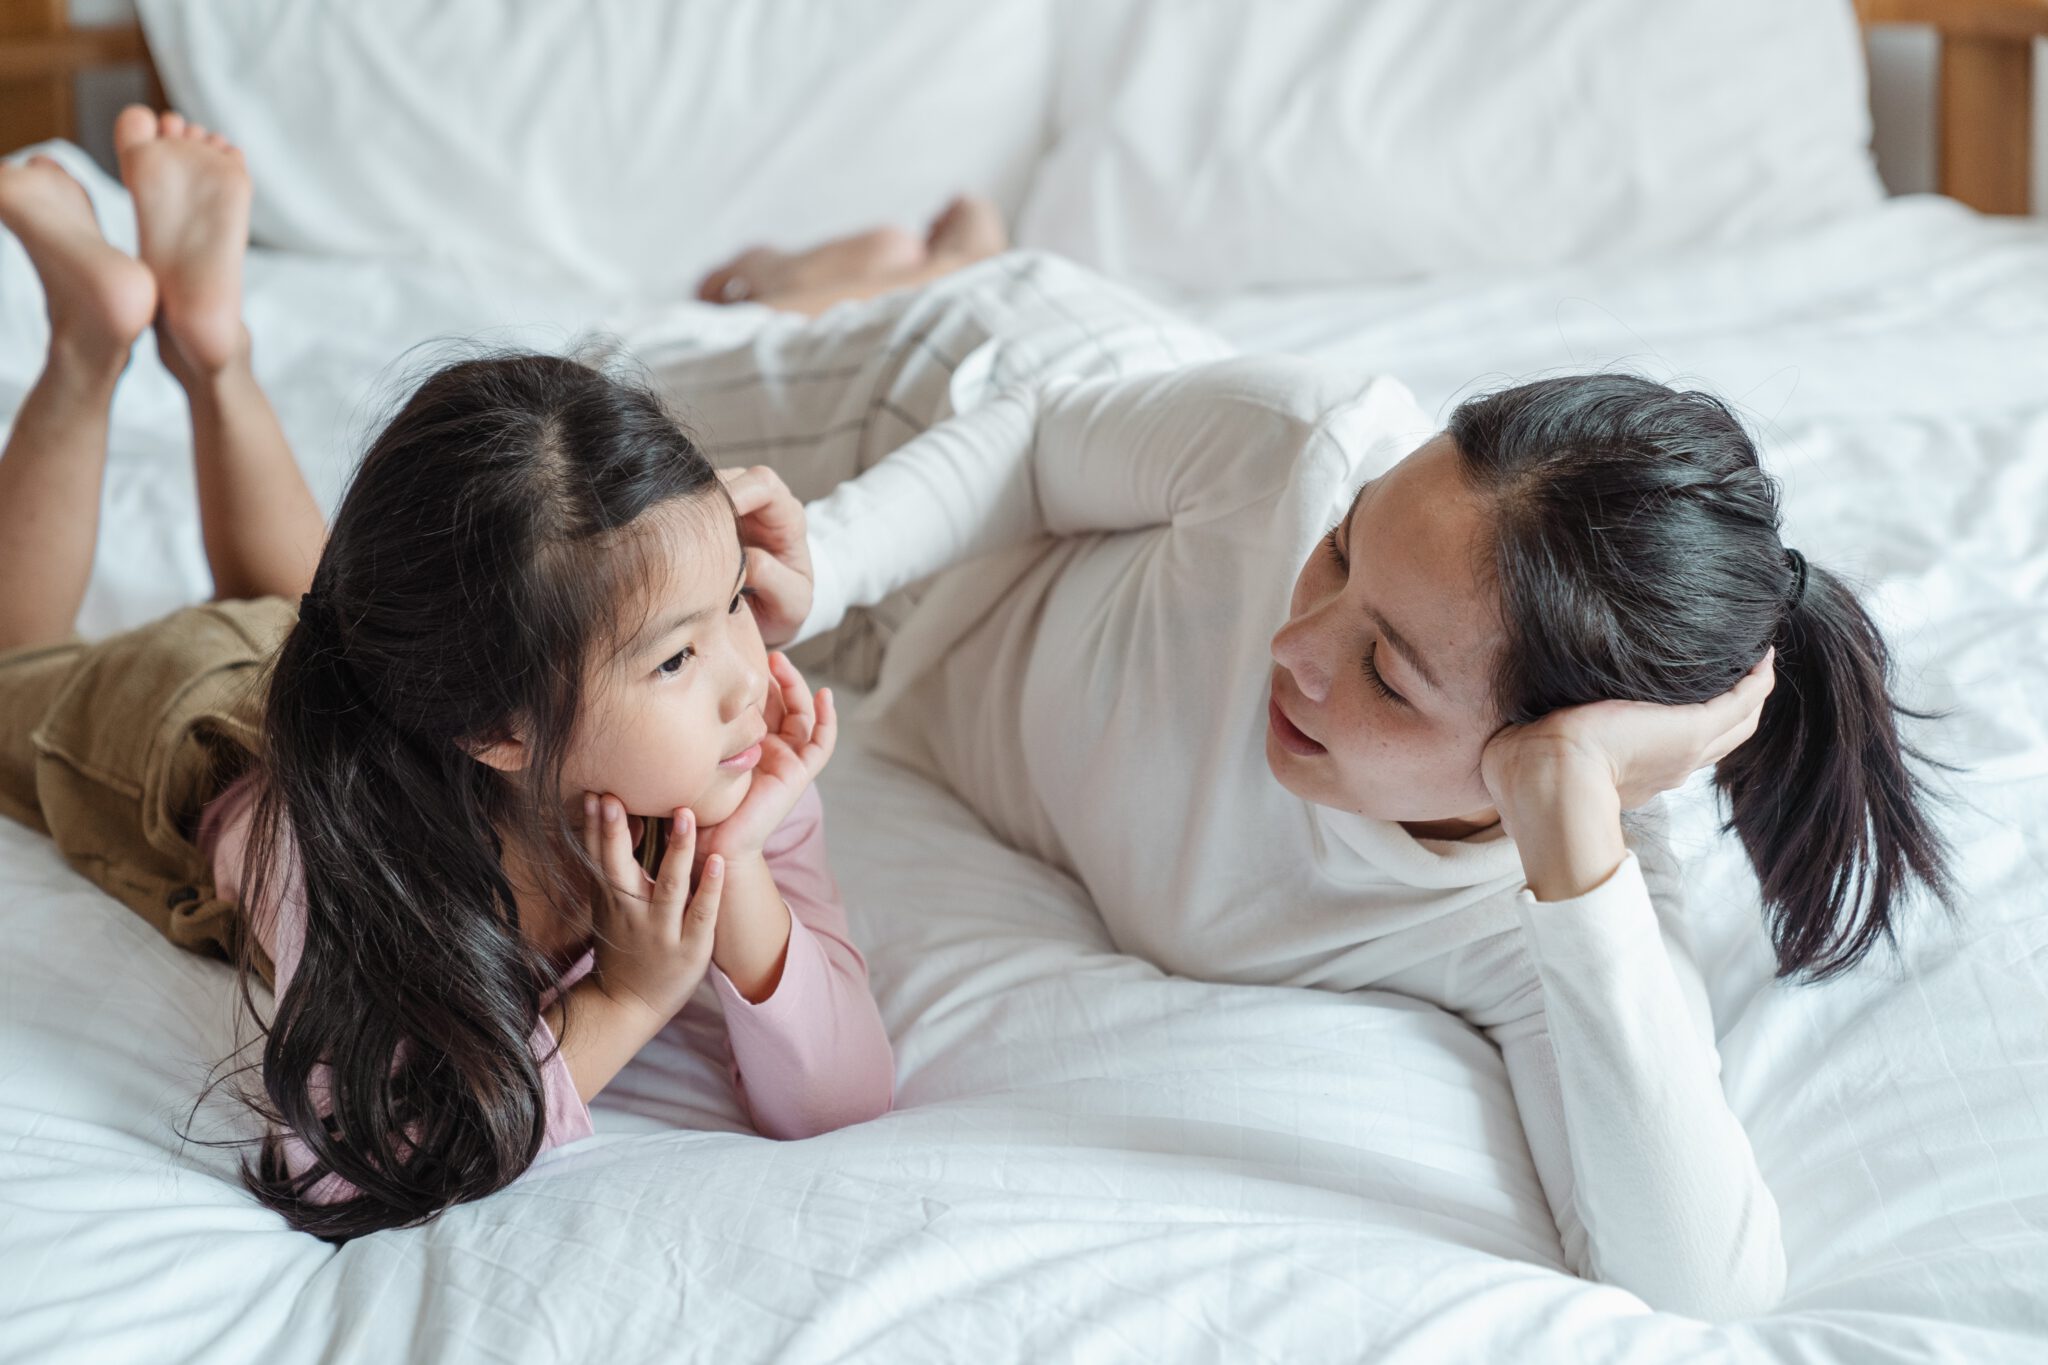 Moeder die met haar kind op bed ligt en praat over heftige nieuwsberichten